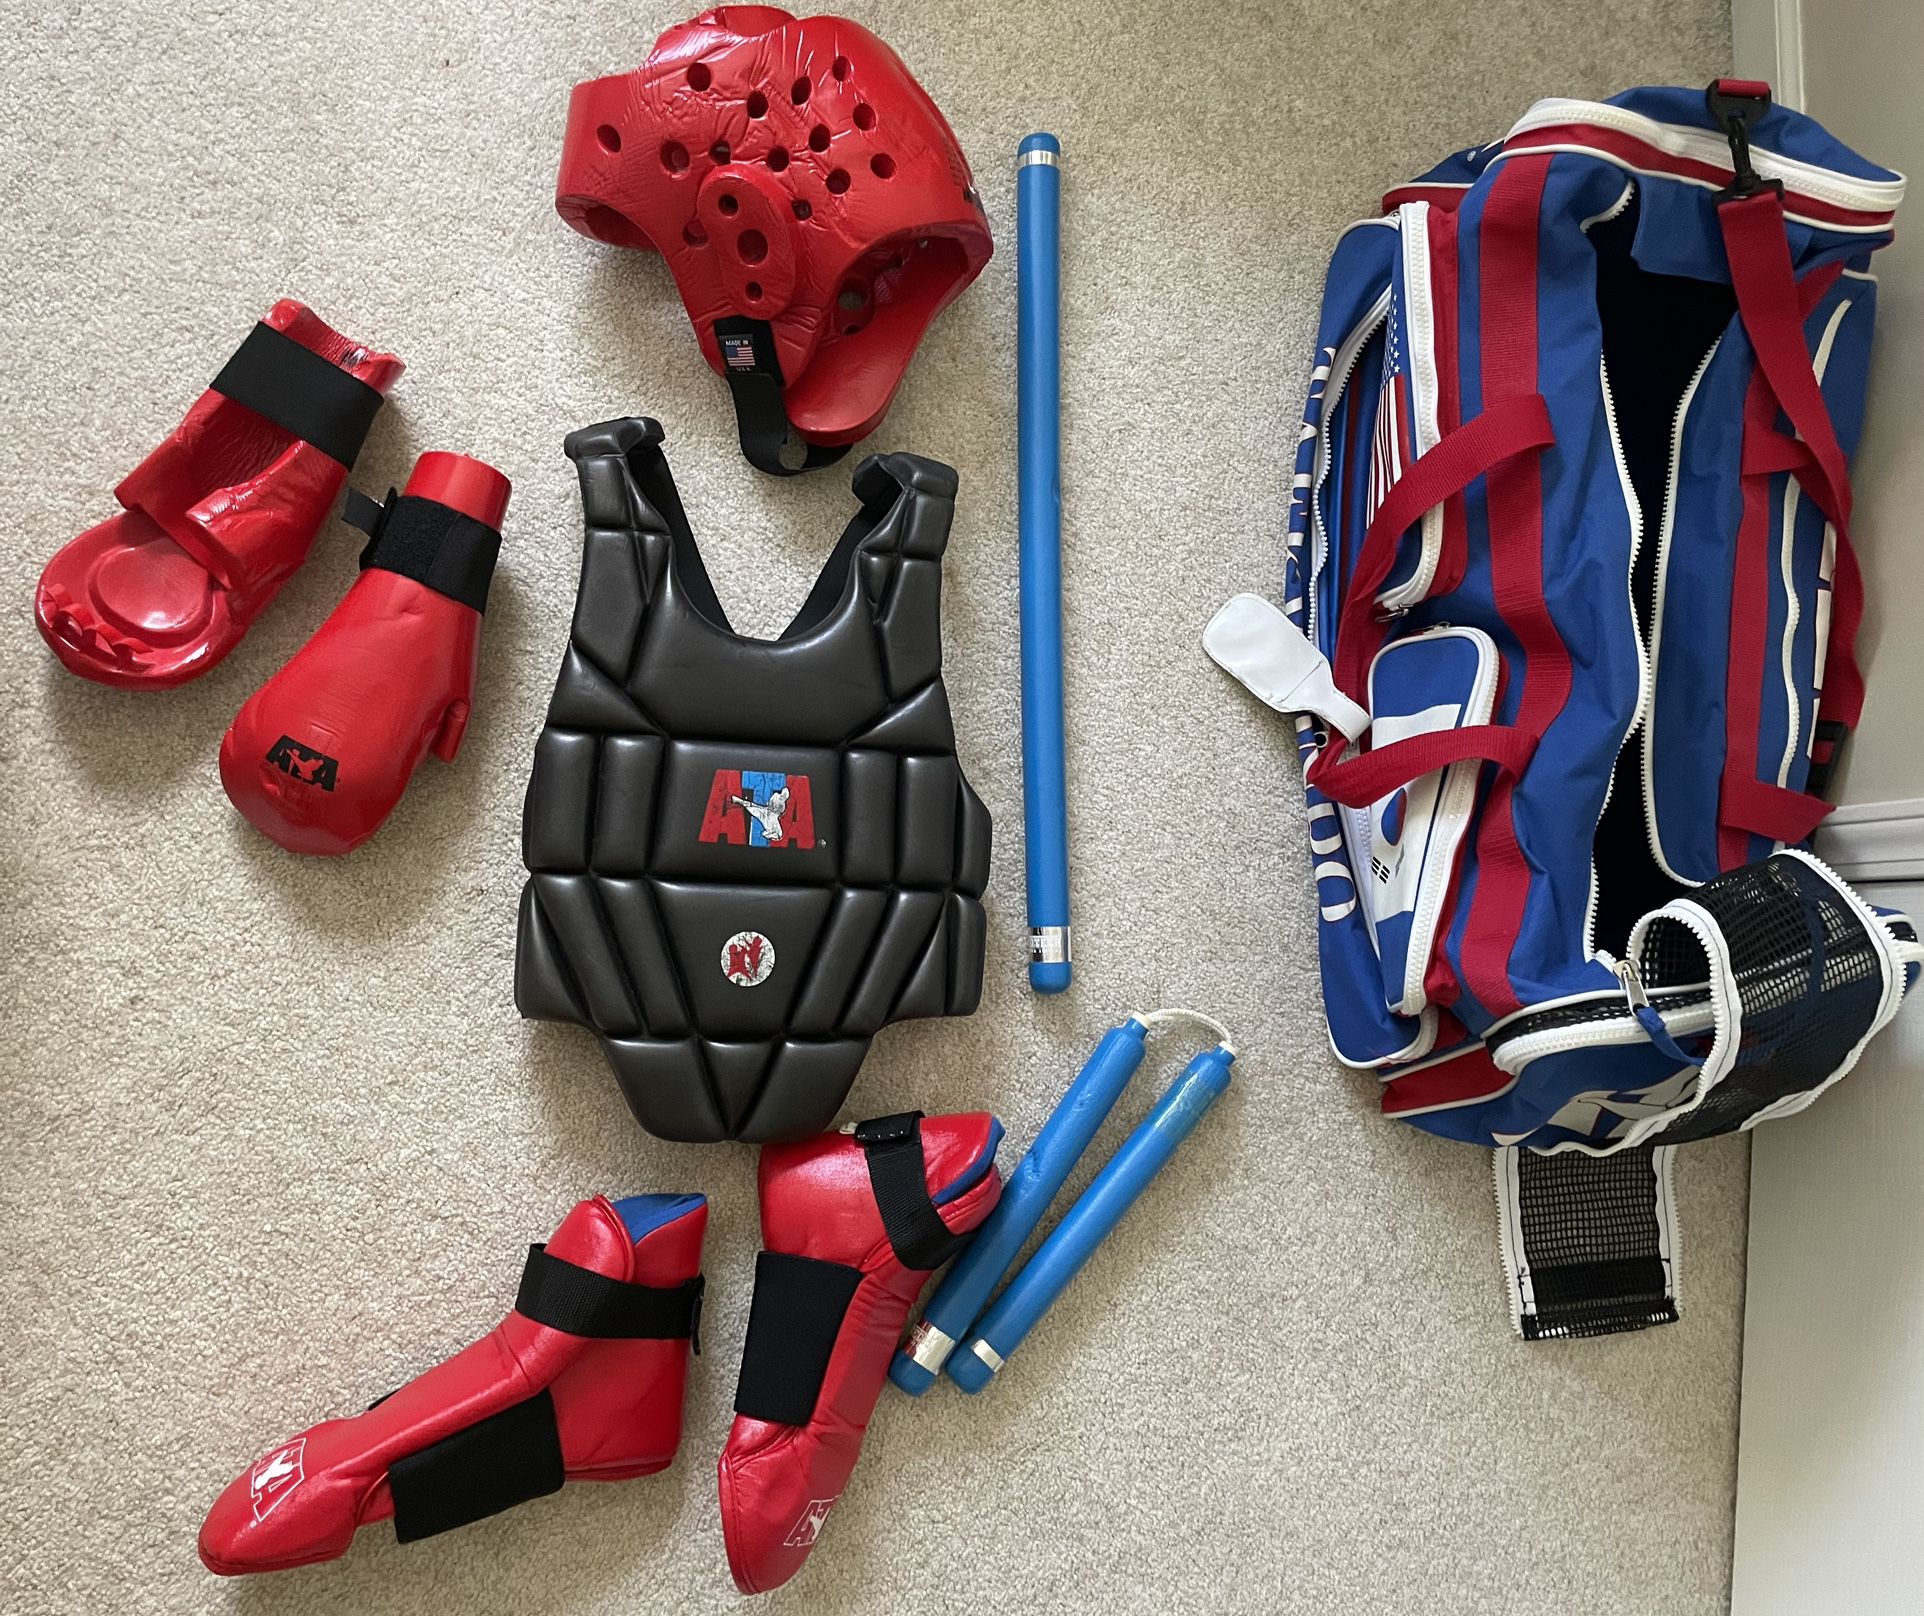 Taekwondo gear and bag